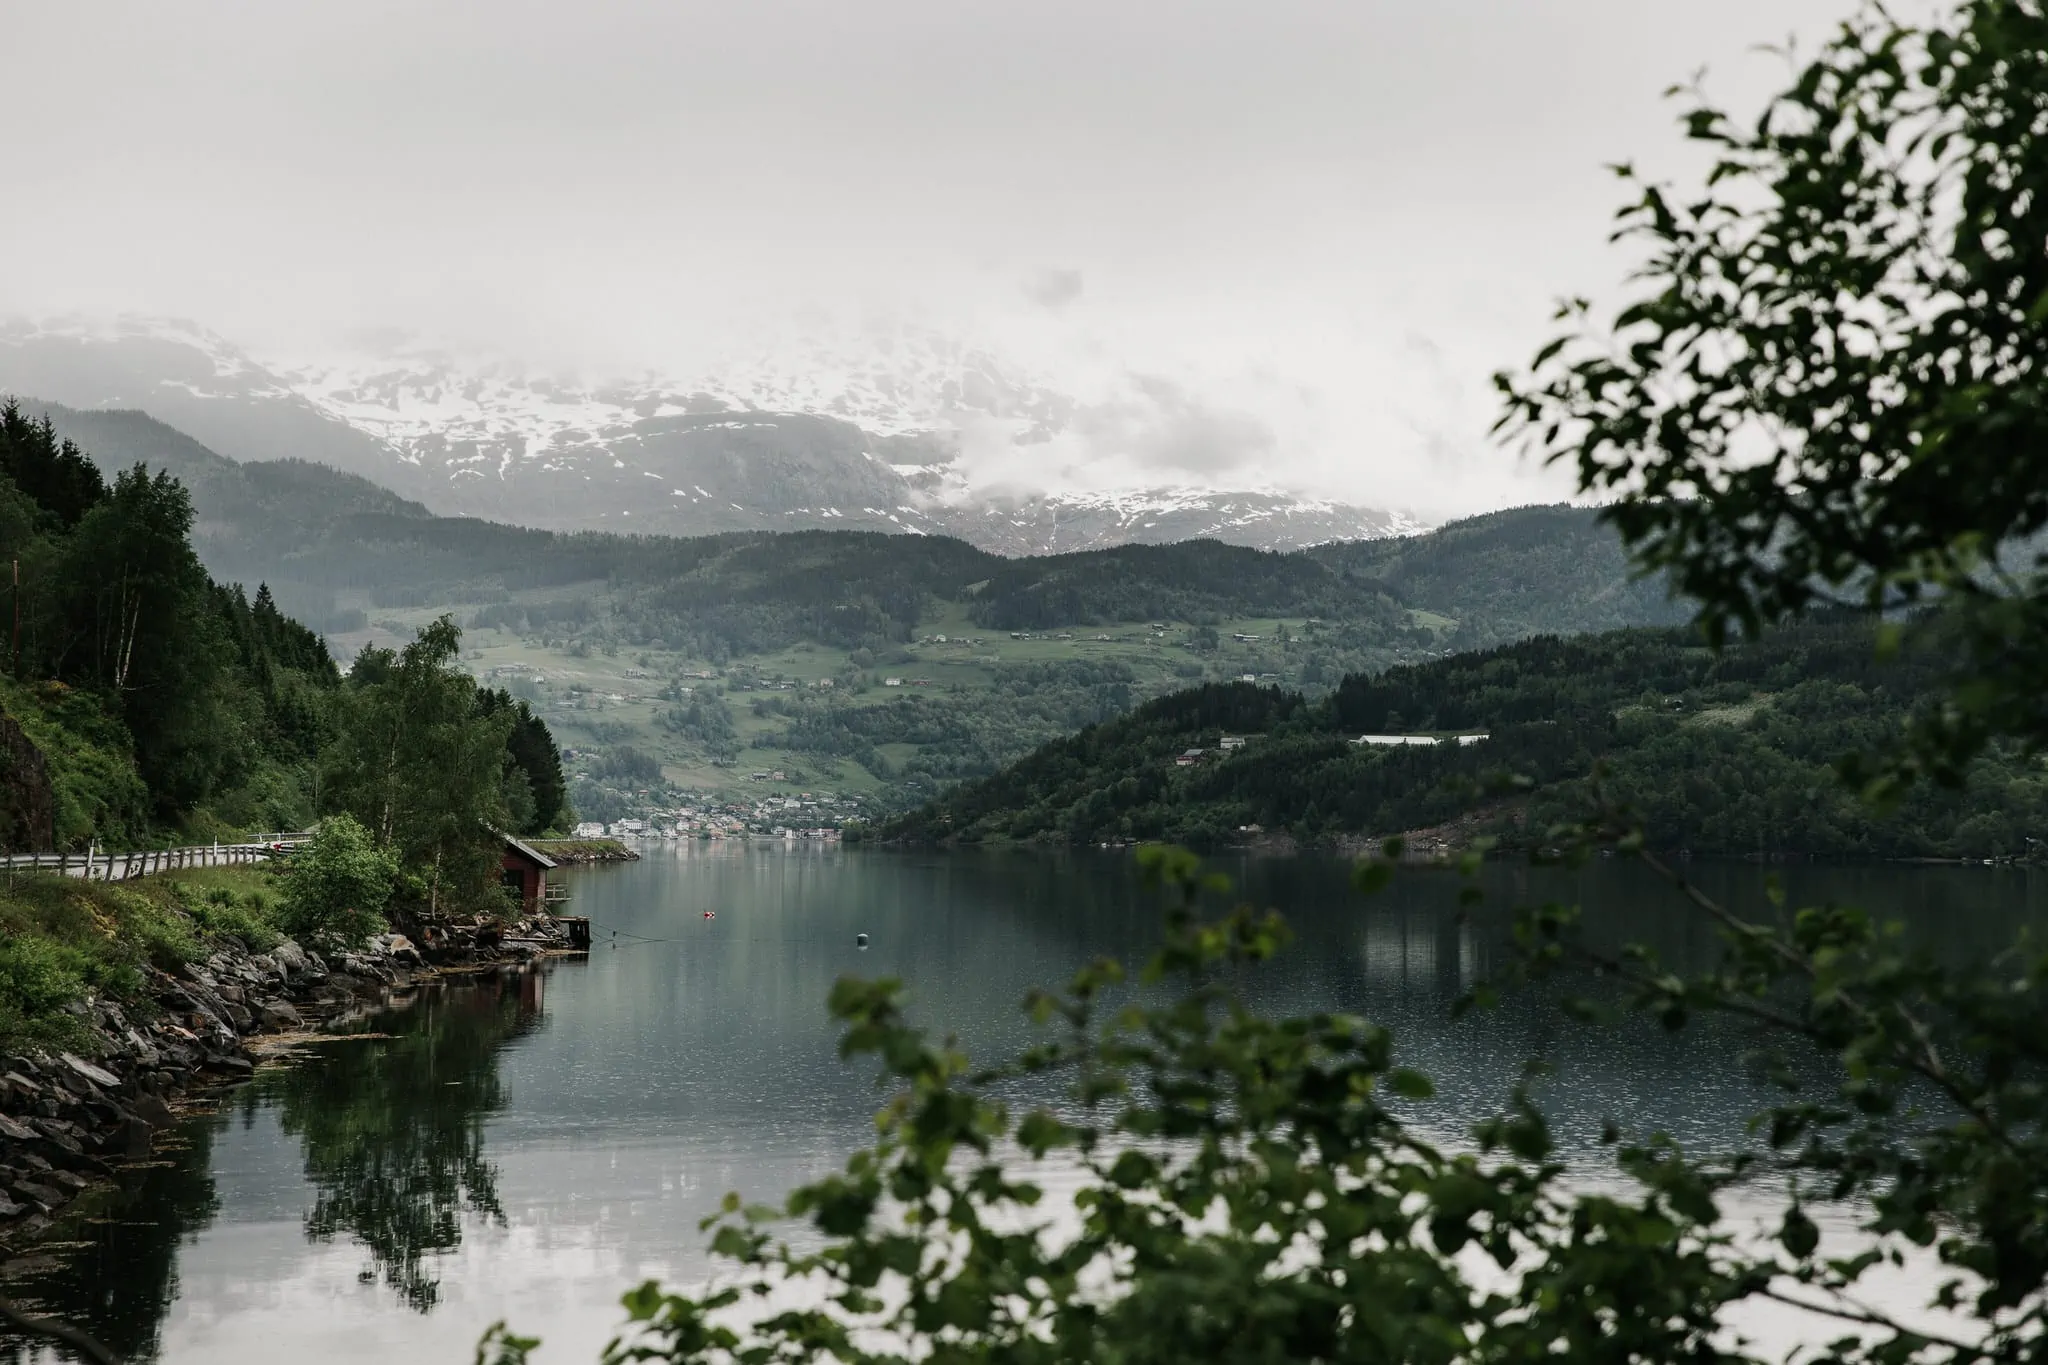 Hardangerfjorden in Norway